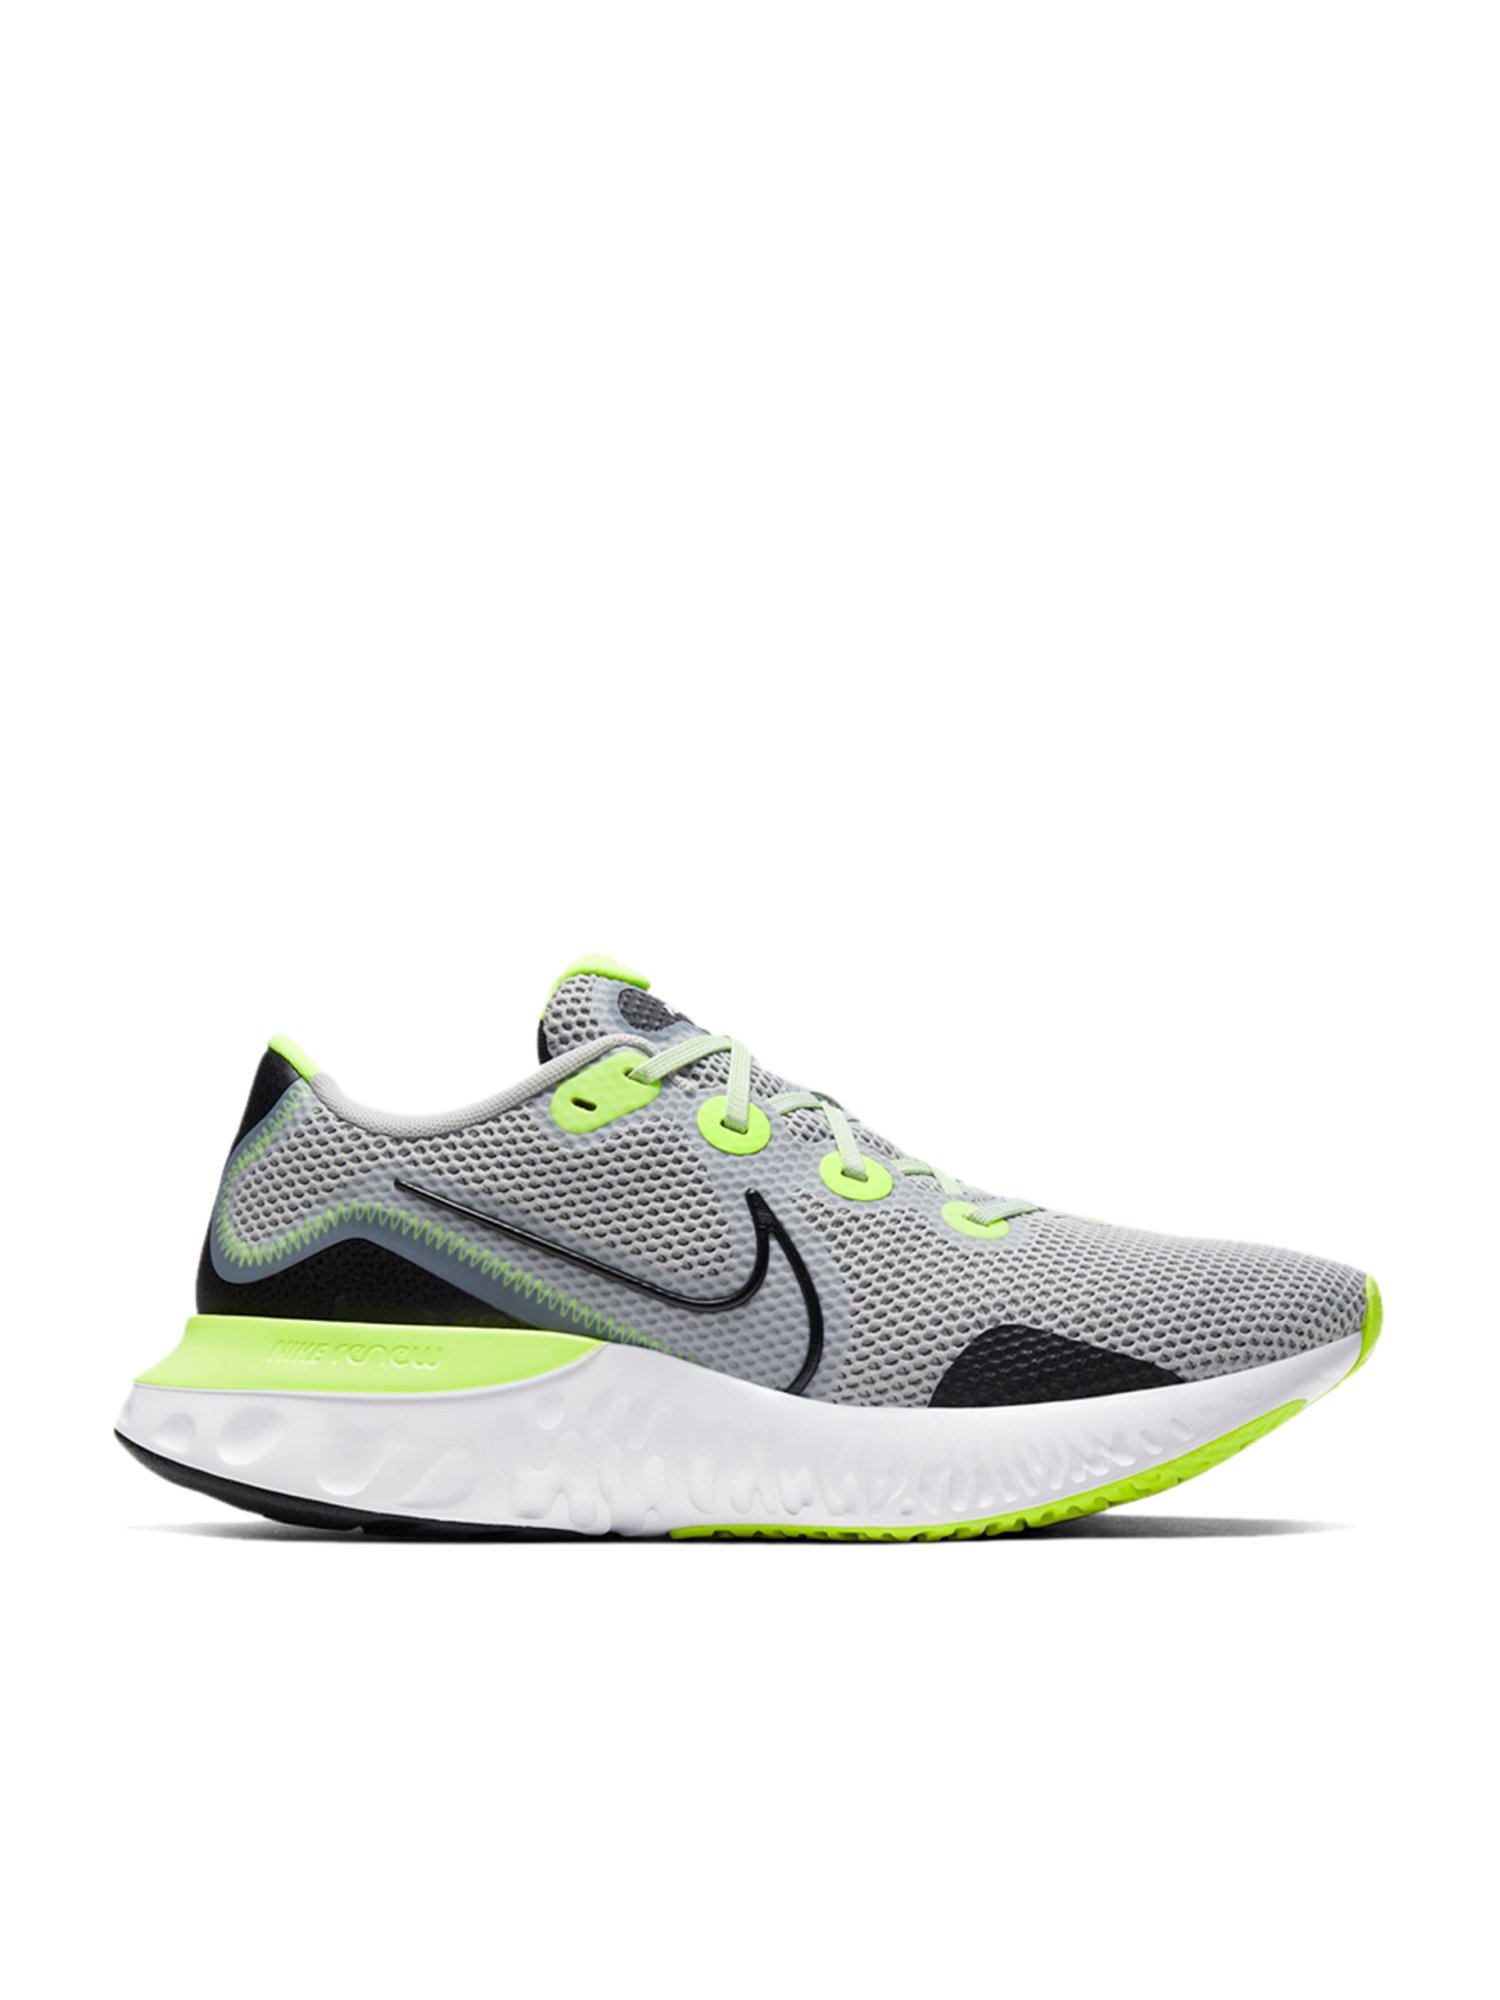 Nike Renew Run Grey Fog Running Shoes 